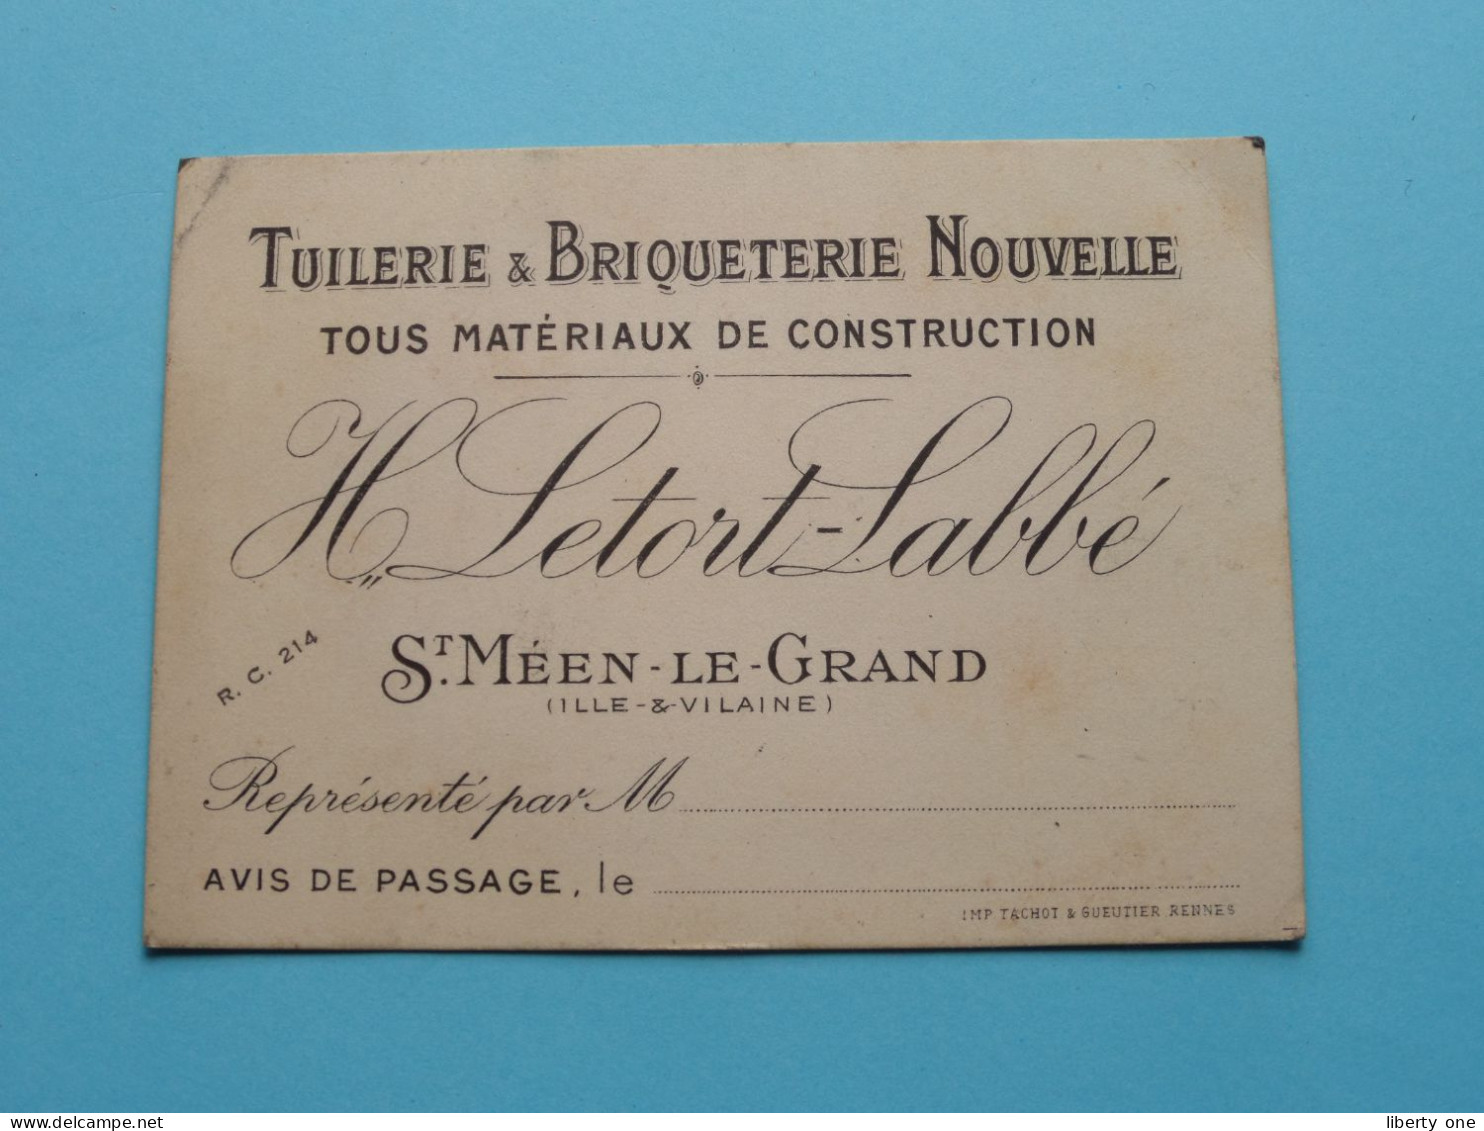 Tuilerie & Briqueterie Nouvelle H. LETORT - Labbé > St. Méen-Le-Grand ( Ille & Vilaine ) > ( Voir SCAN ) La FRANCE ! - Visiting Cards